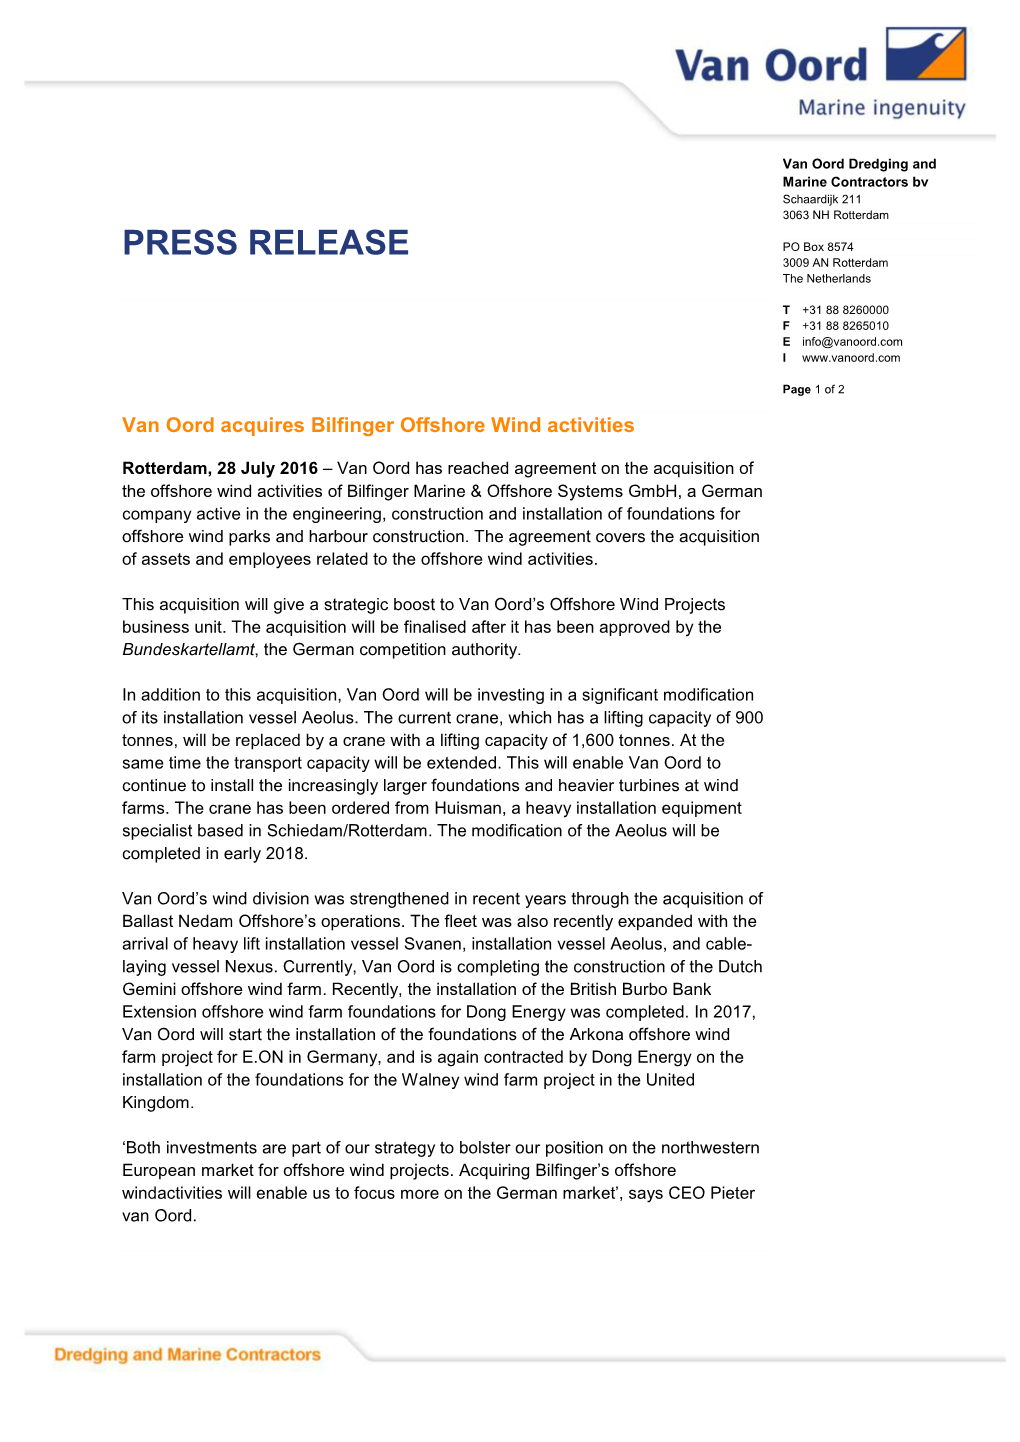 Van Oord Acquires Bilfinger Offshore Wind Activities